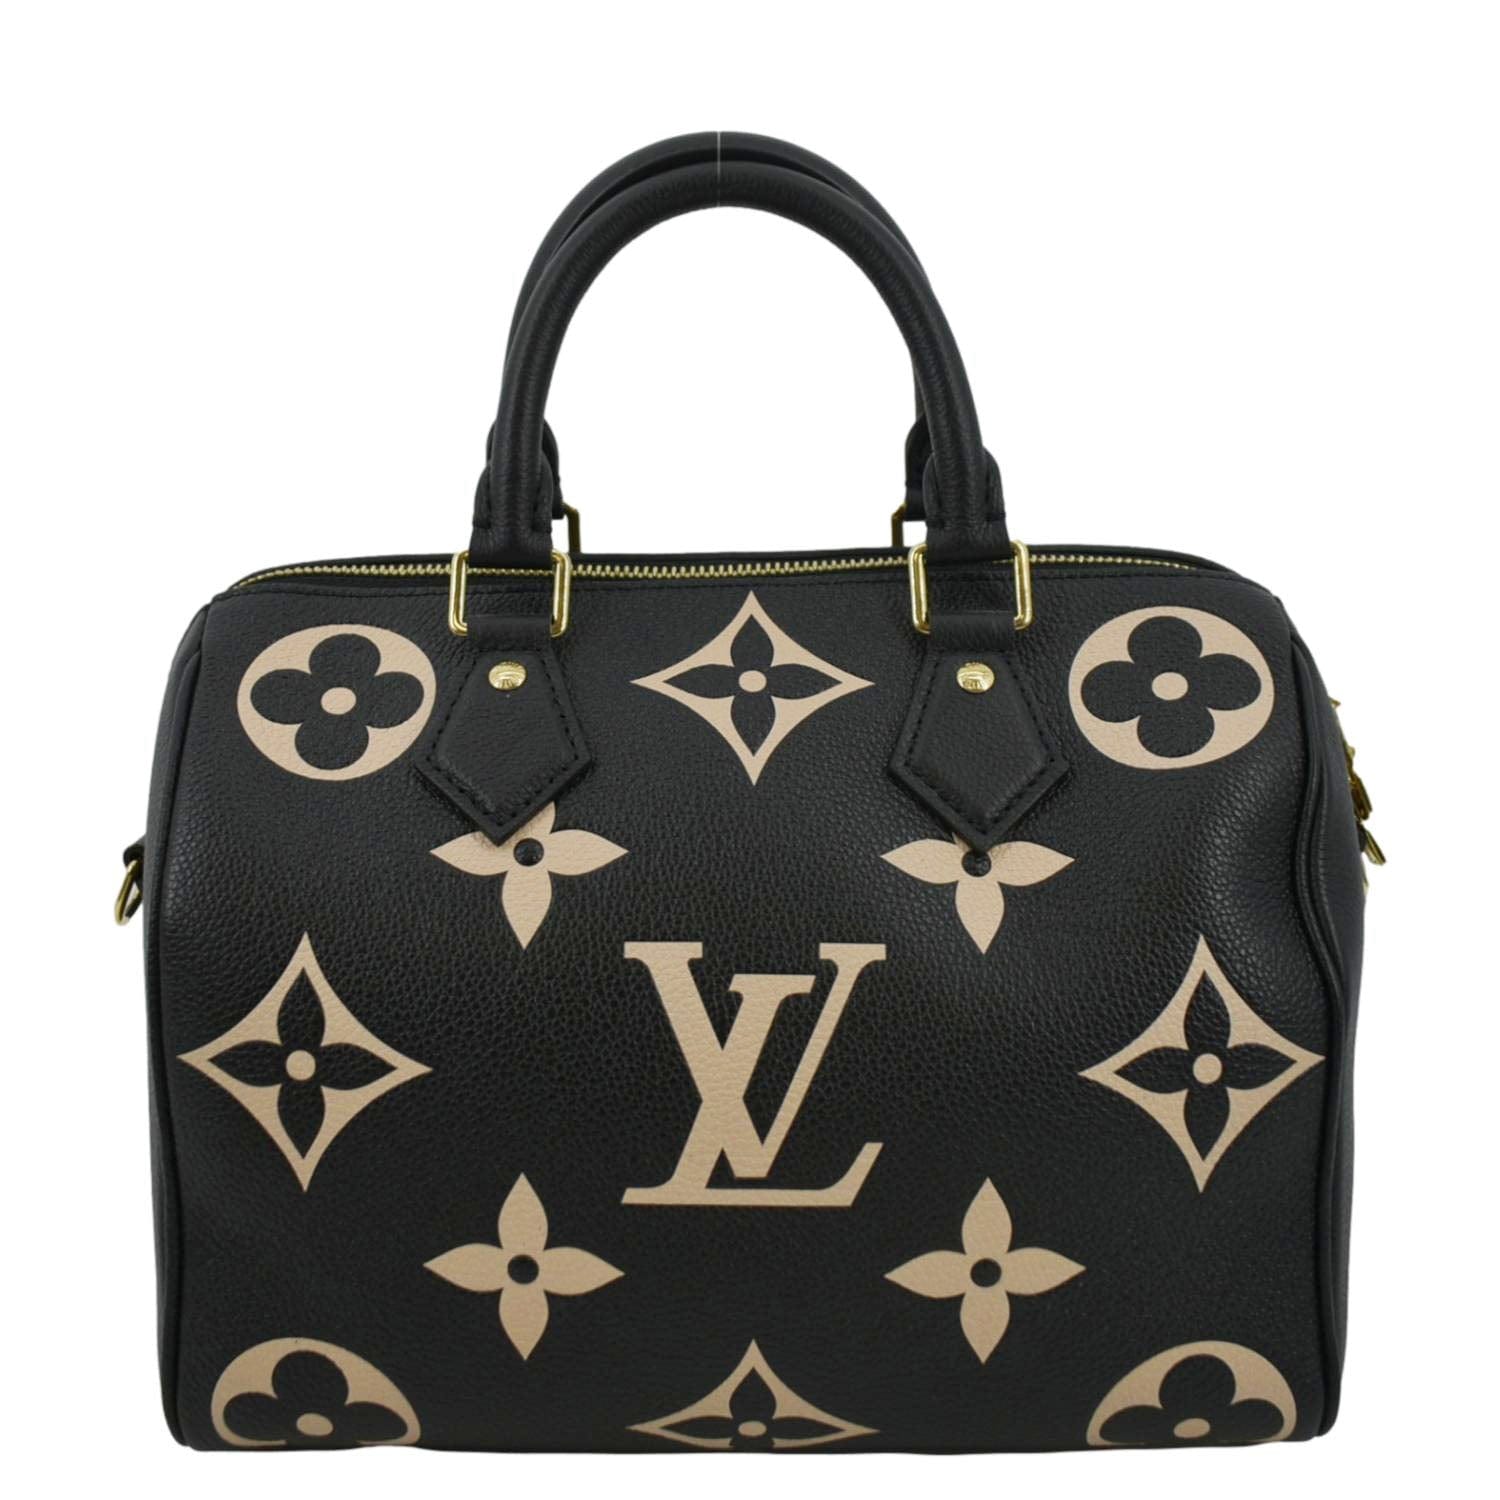 Louis Vuitton Speedy Bandouliere Monogram Empreinte Black/Beige in